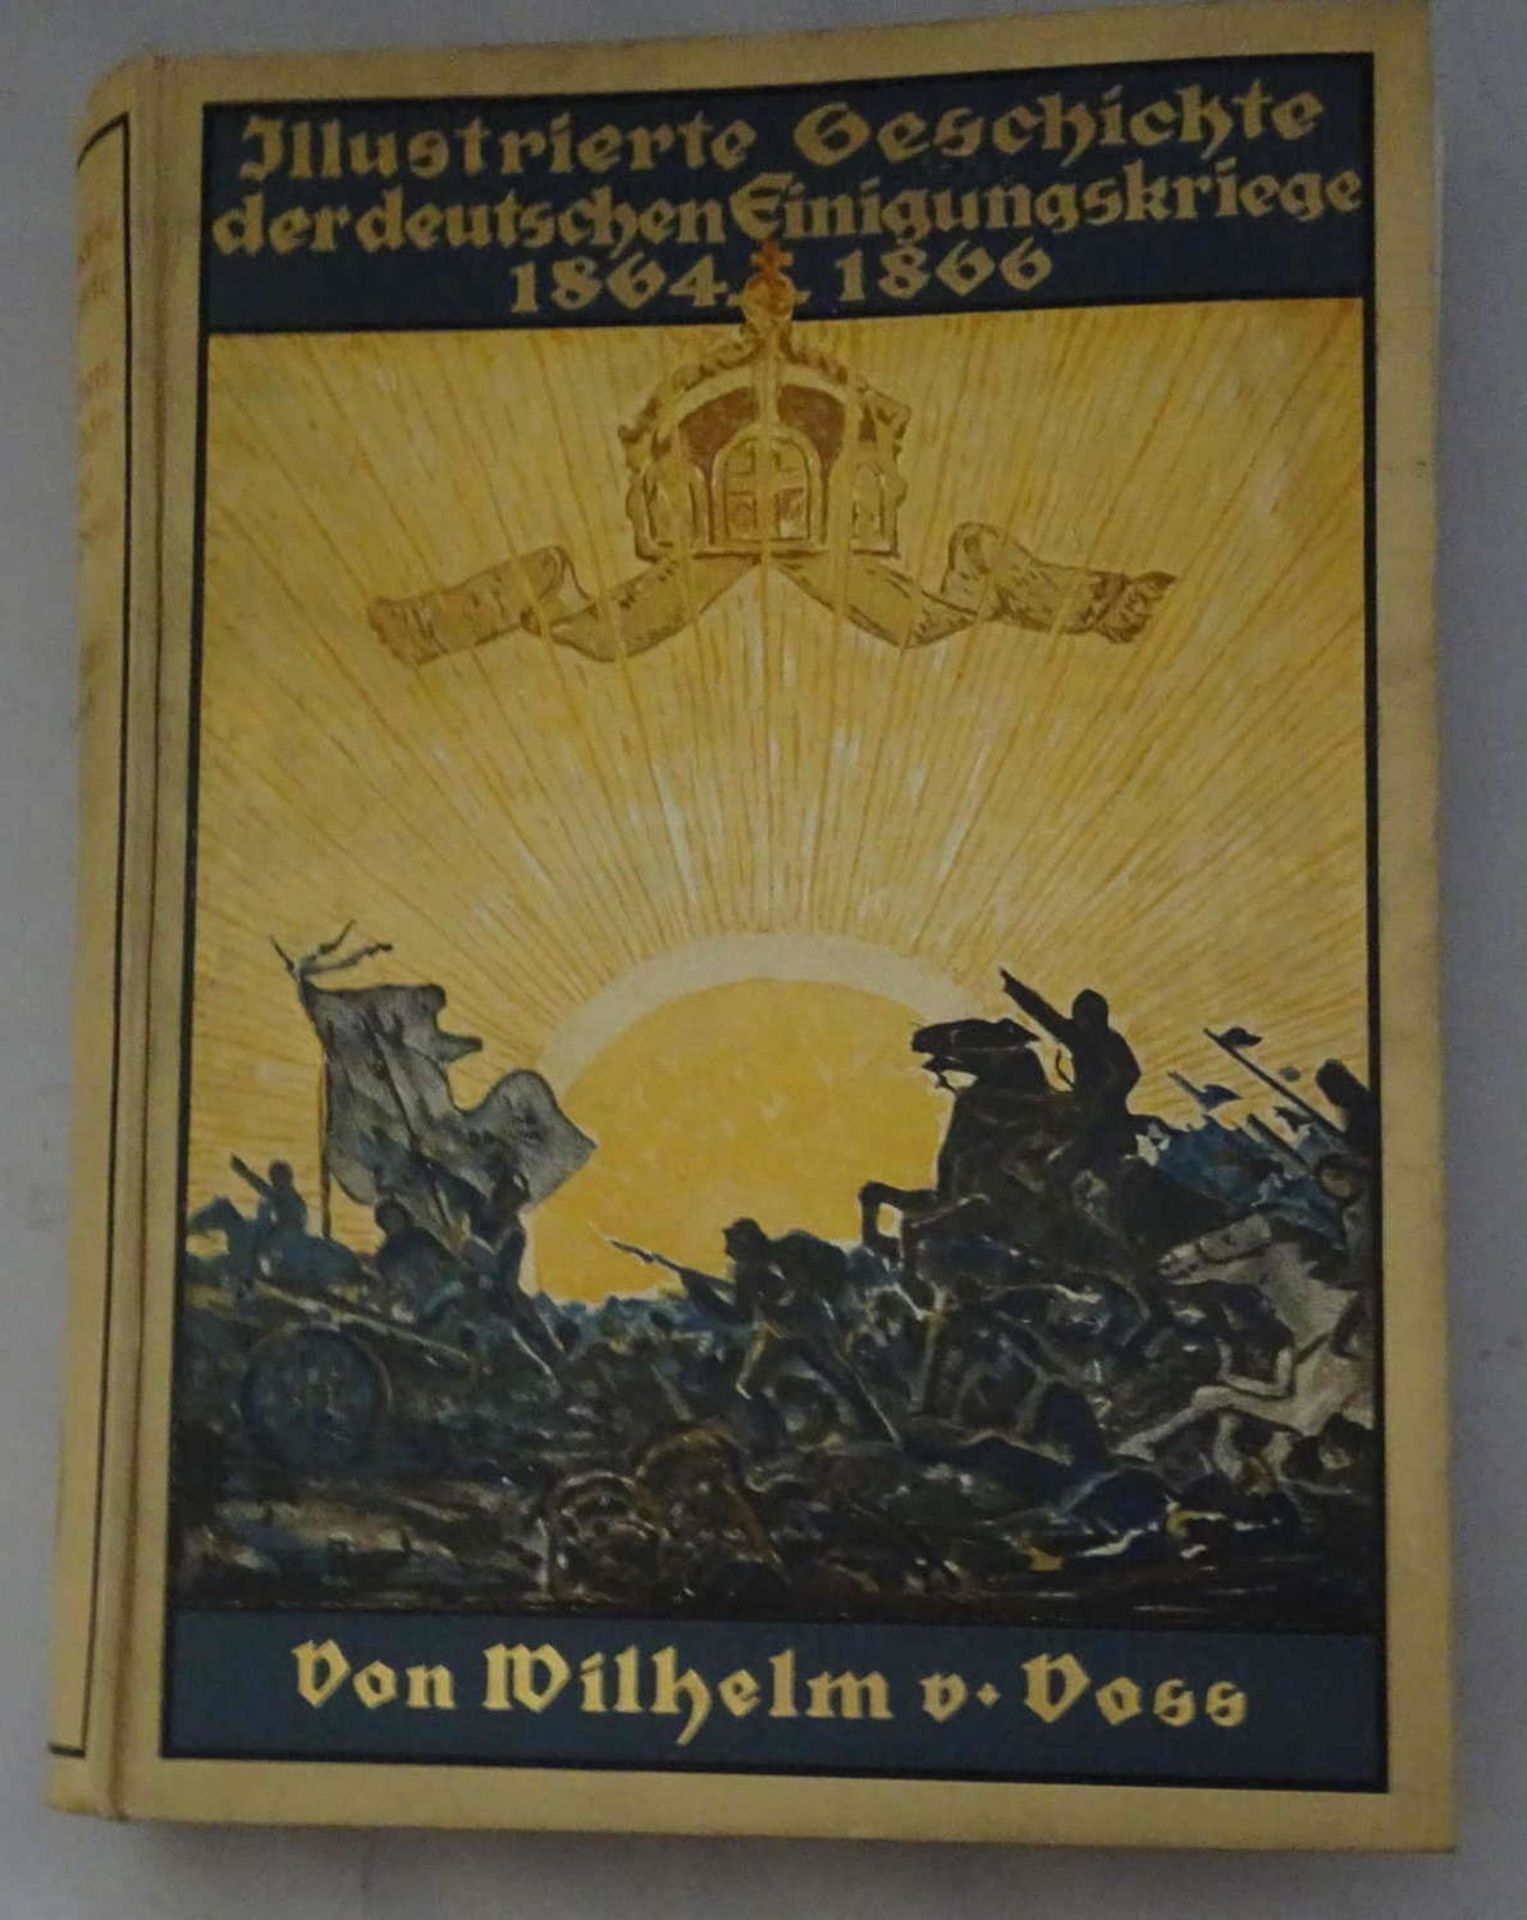 von Voss, Wilhelm, Illustrierte Geschichte der deutschen Einigungskriege 1864 - 1866.Union